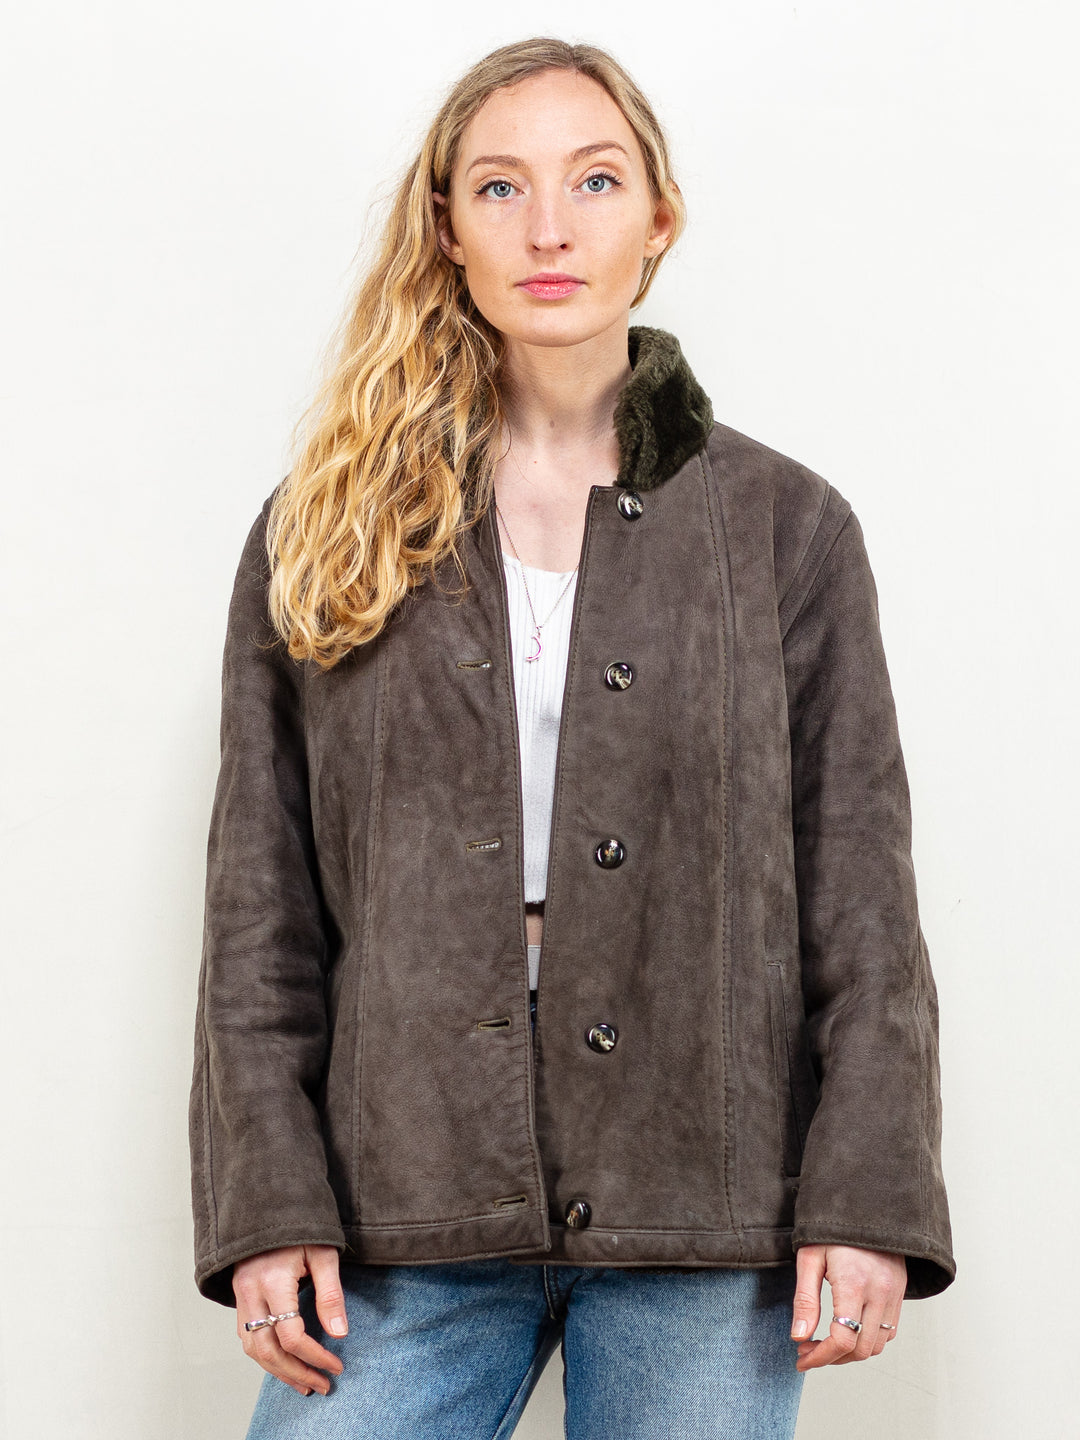 Sheepskin Shearling Jacket vintage 80's women grey suede leather shearling blazer soft flexible overcoat vintage outwear size large